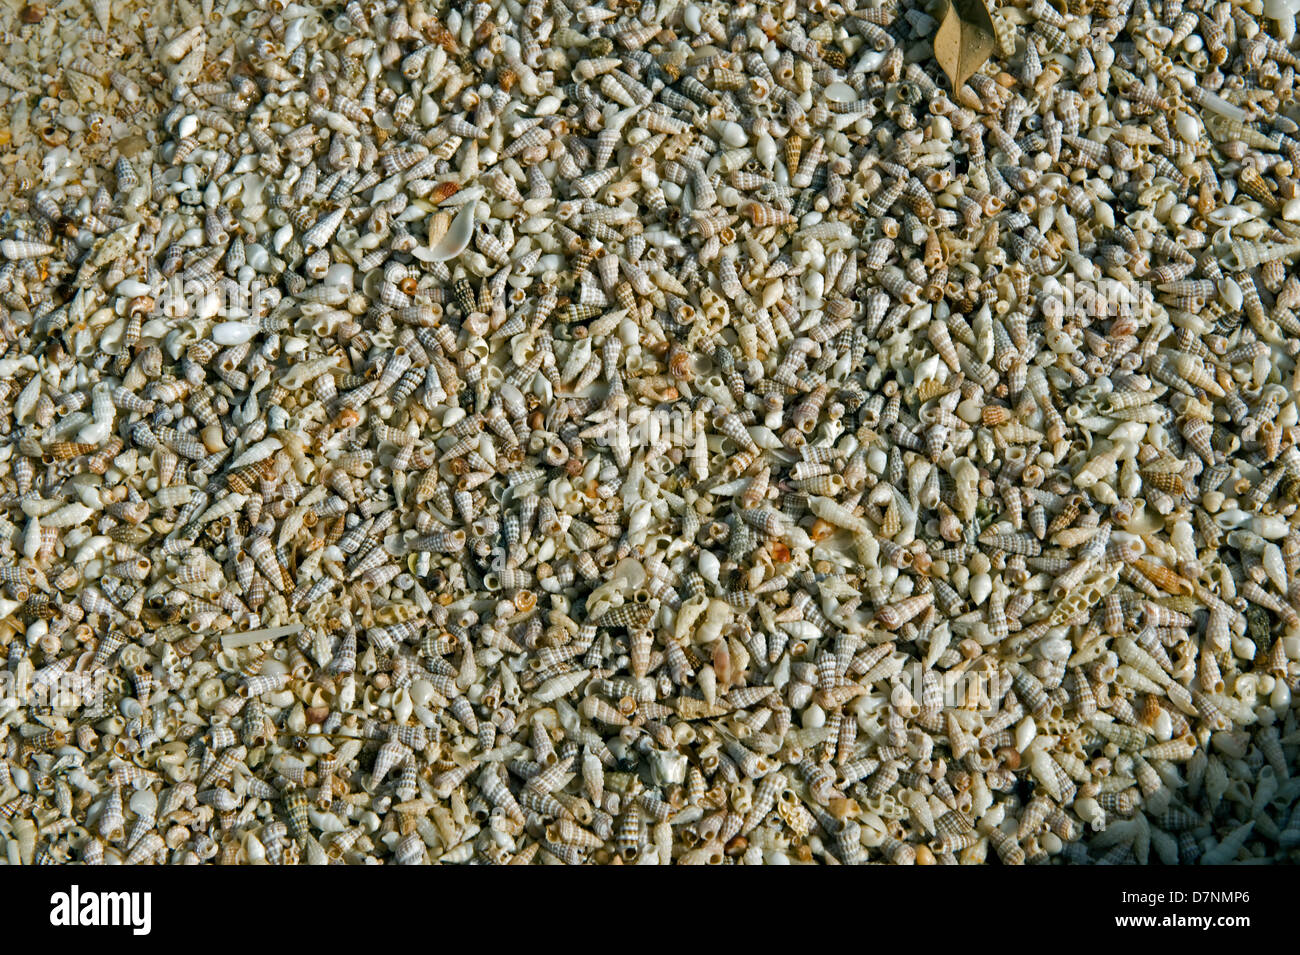 Playa con un mayor número de pequeñas conchas de mar, Abu Dhabi, Emiratos Arabes Unidos Foto de stock